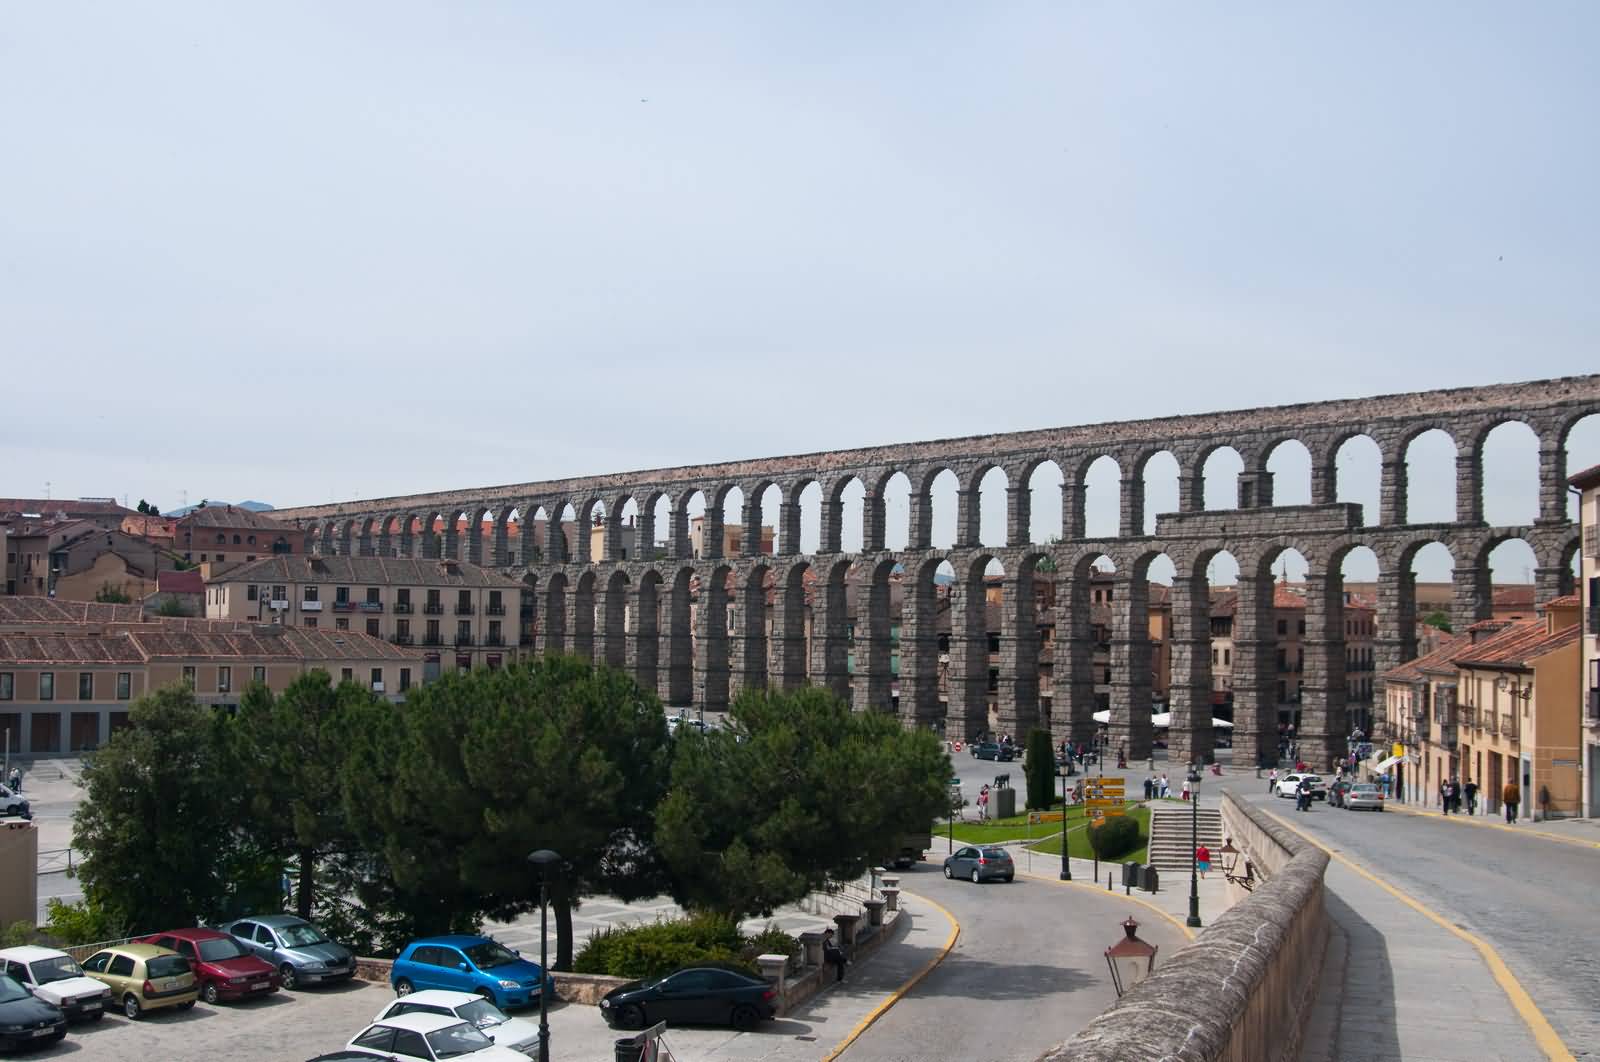 Aqueduct Of Segovia In Spain